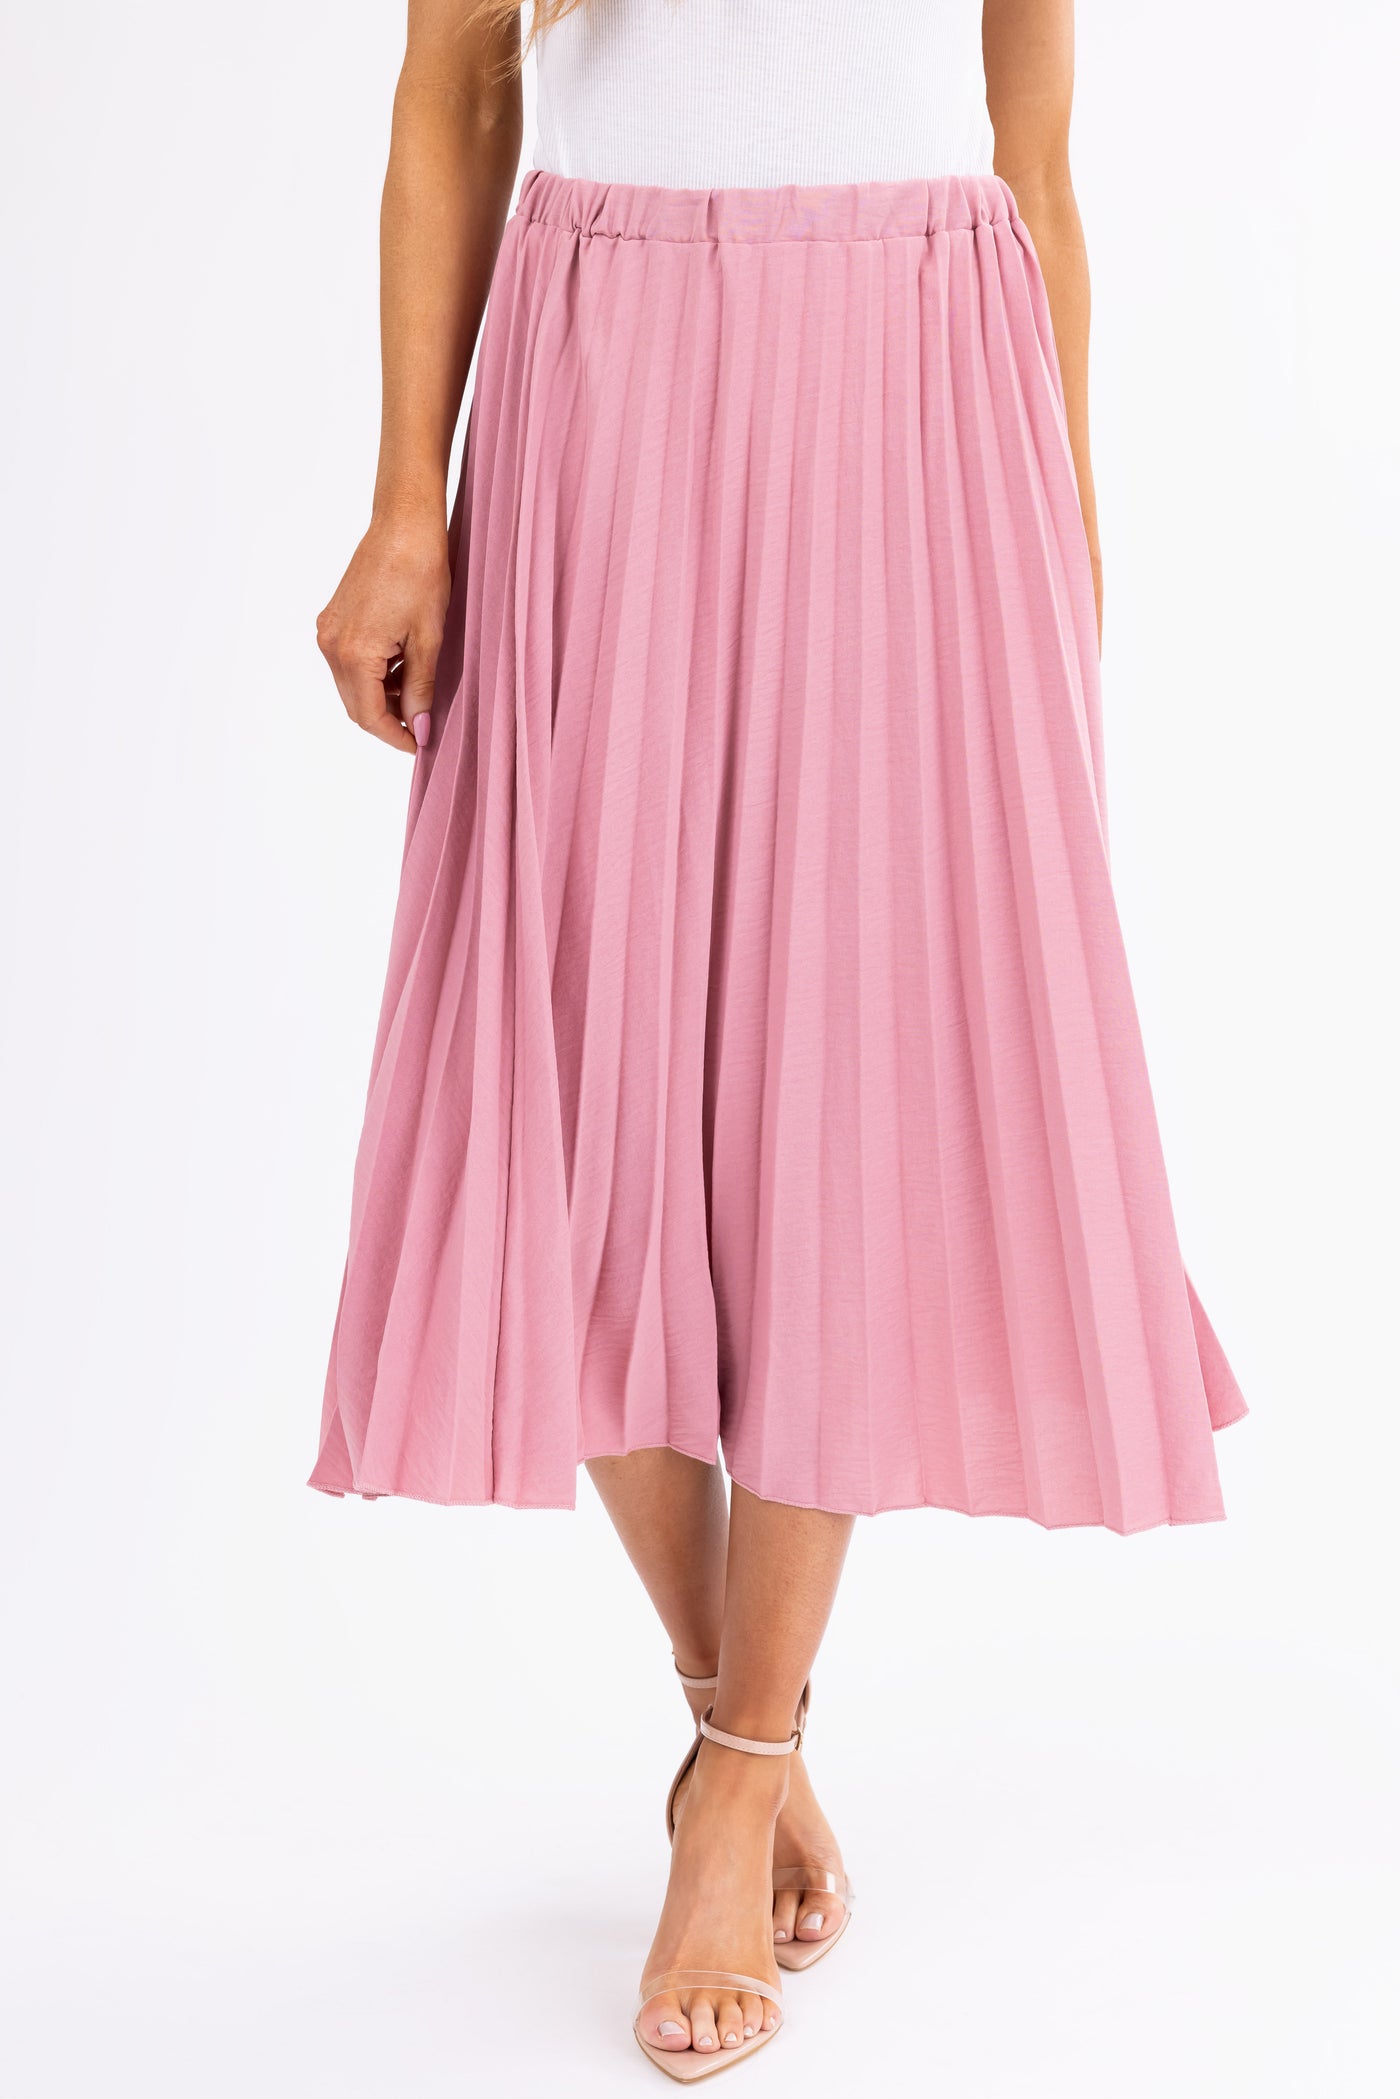 Hazy Pink Pleated Elastic Waist Midi Skirt